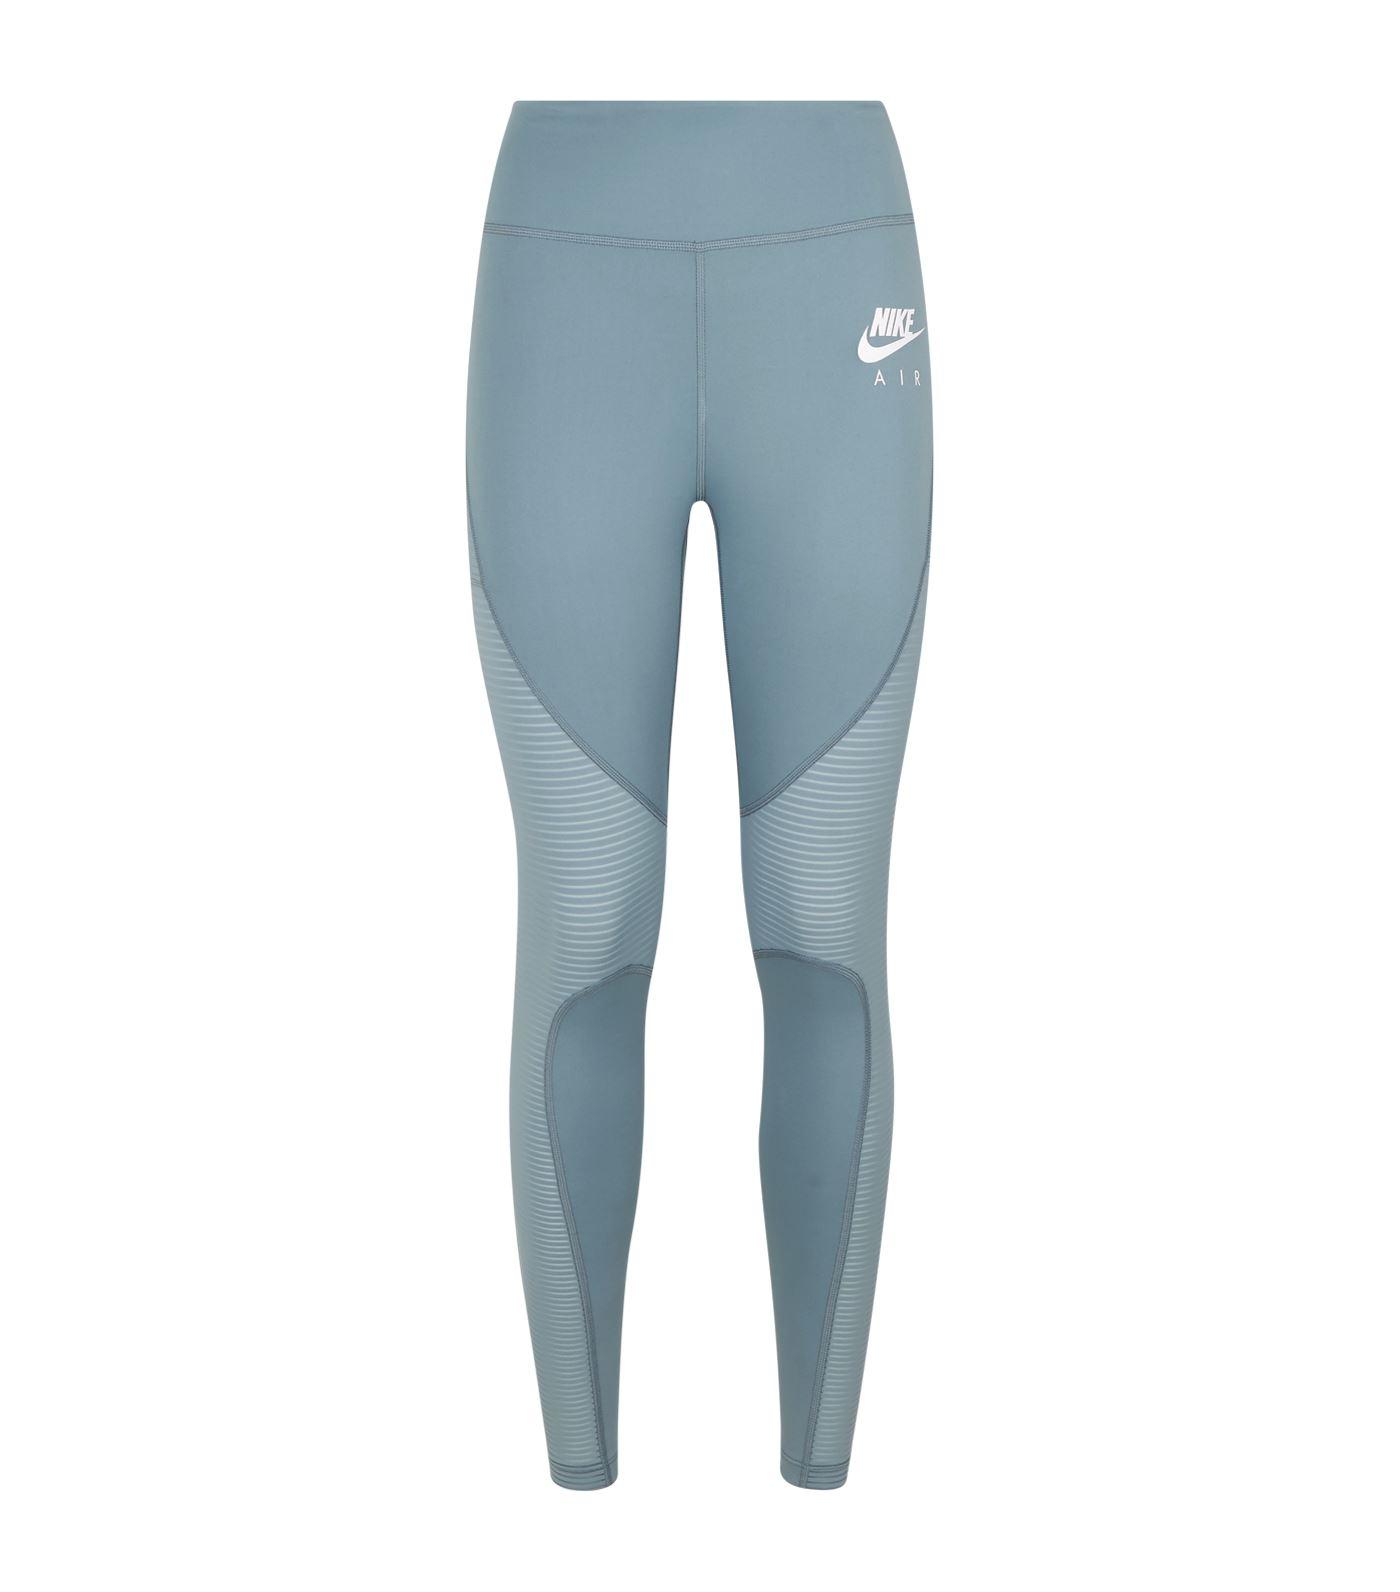 Nike Air Running Leggings in Grey (Gray 